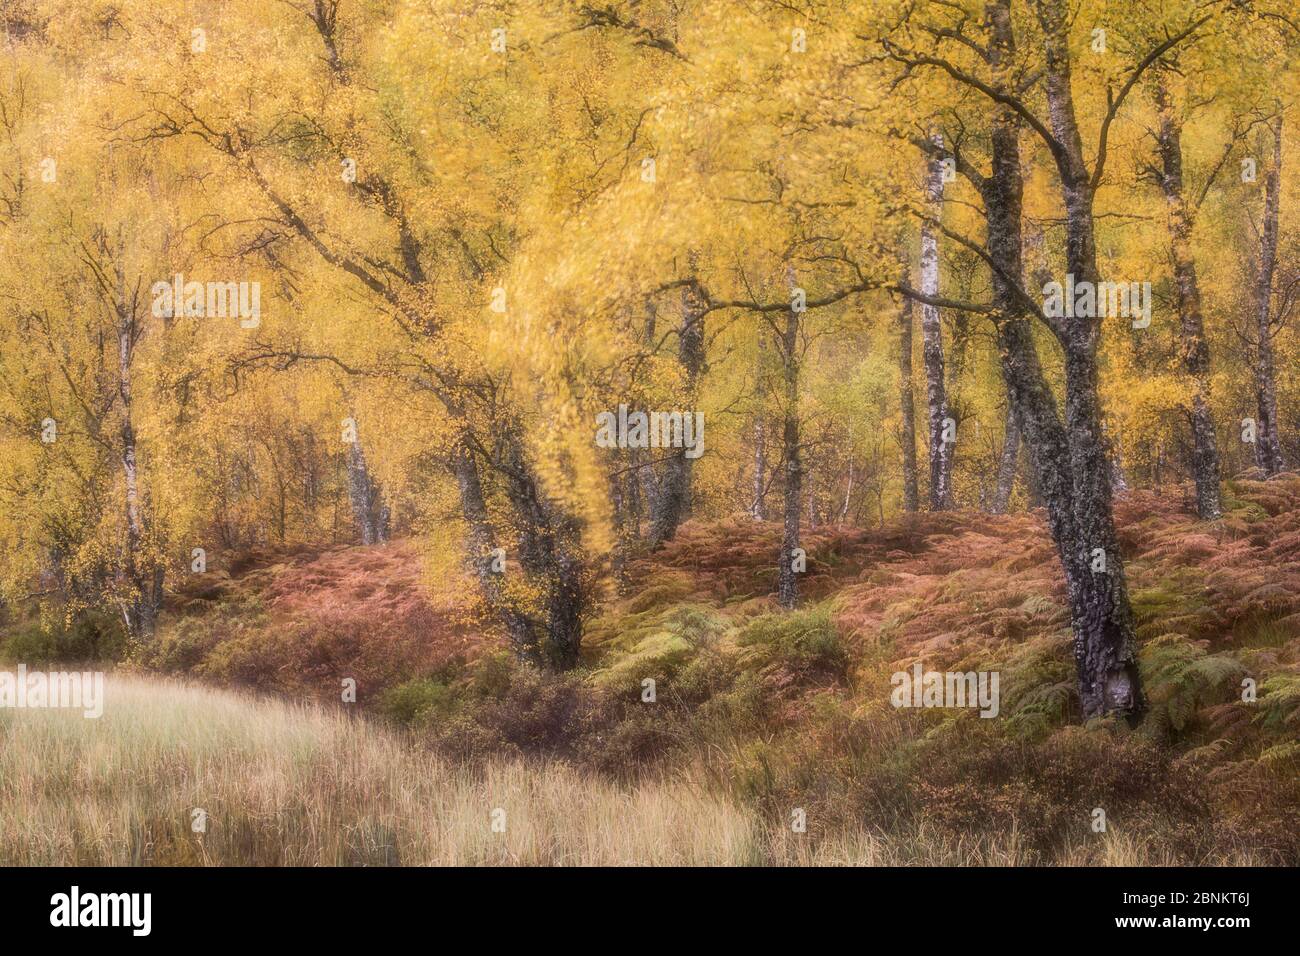 Forêt de bouleau, Réserve naturelle nationale de Craigellachie, Parc national de Cairngorms, Écosse, octobre 2015. Banque D'Images